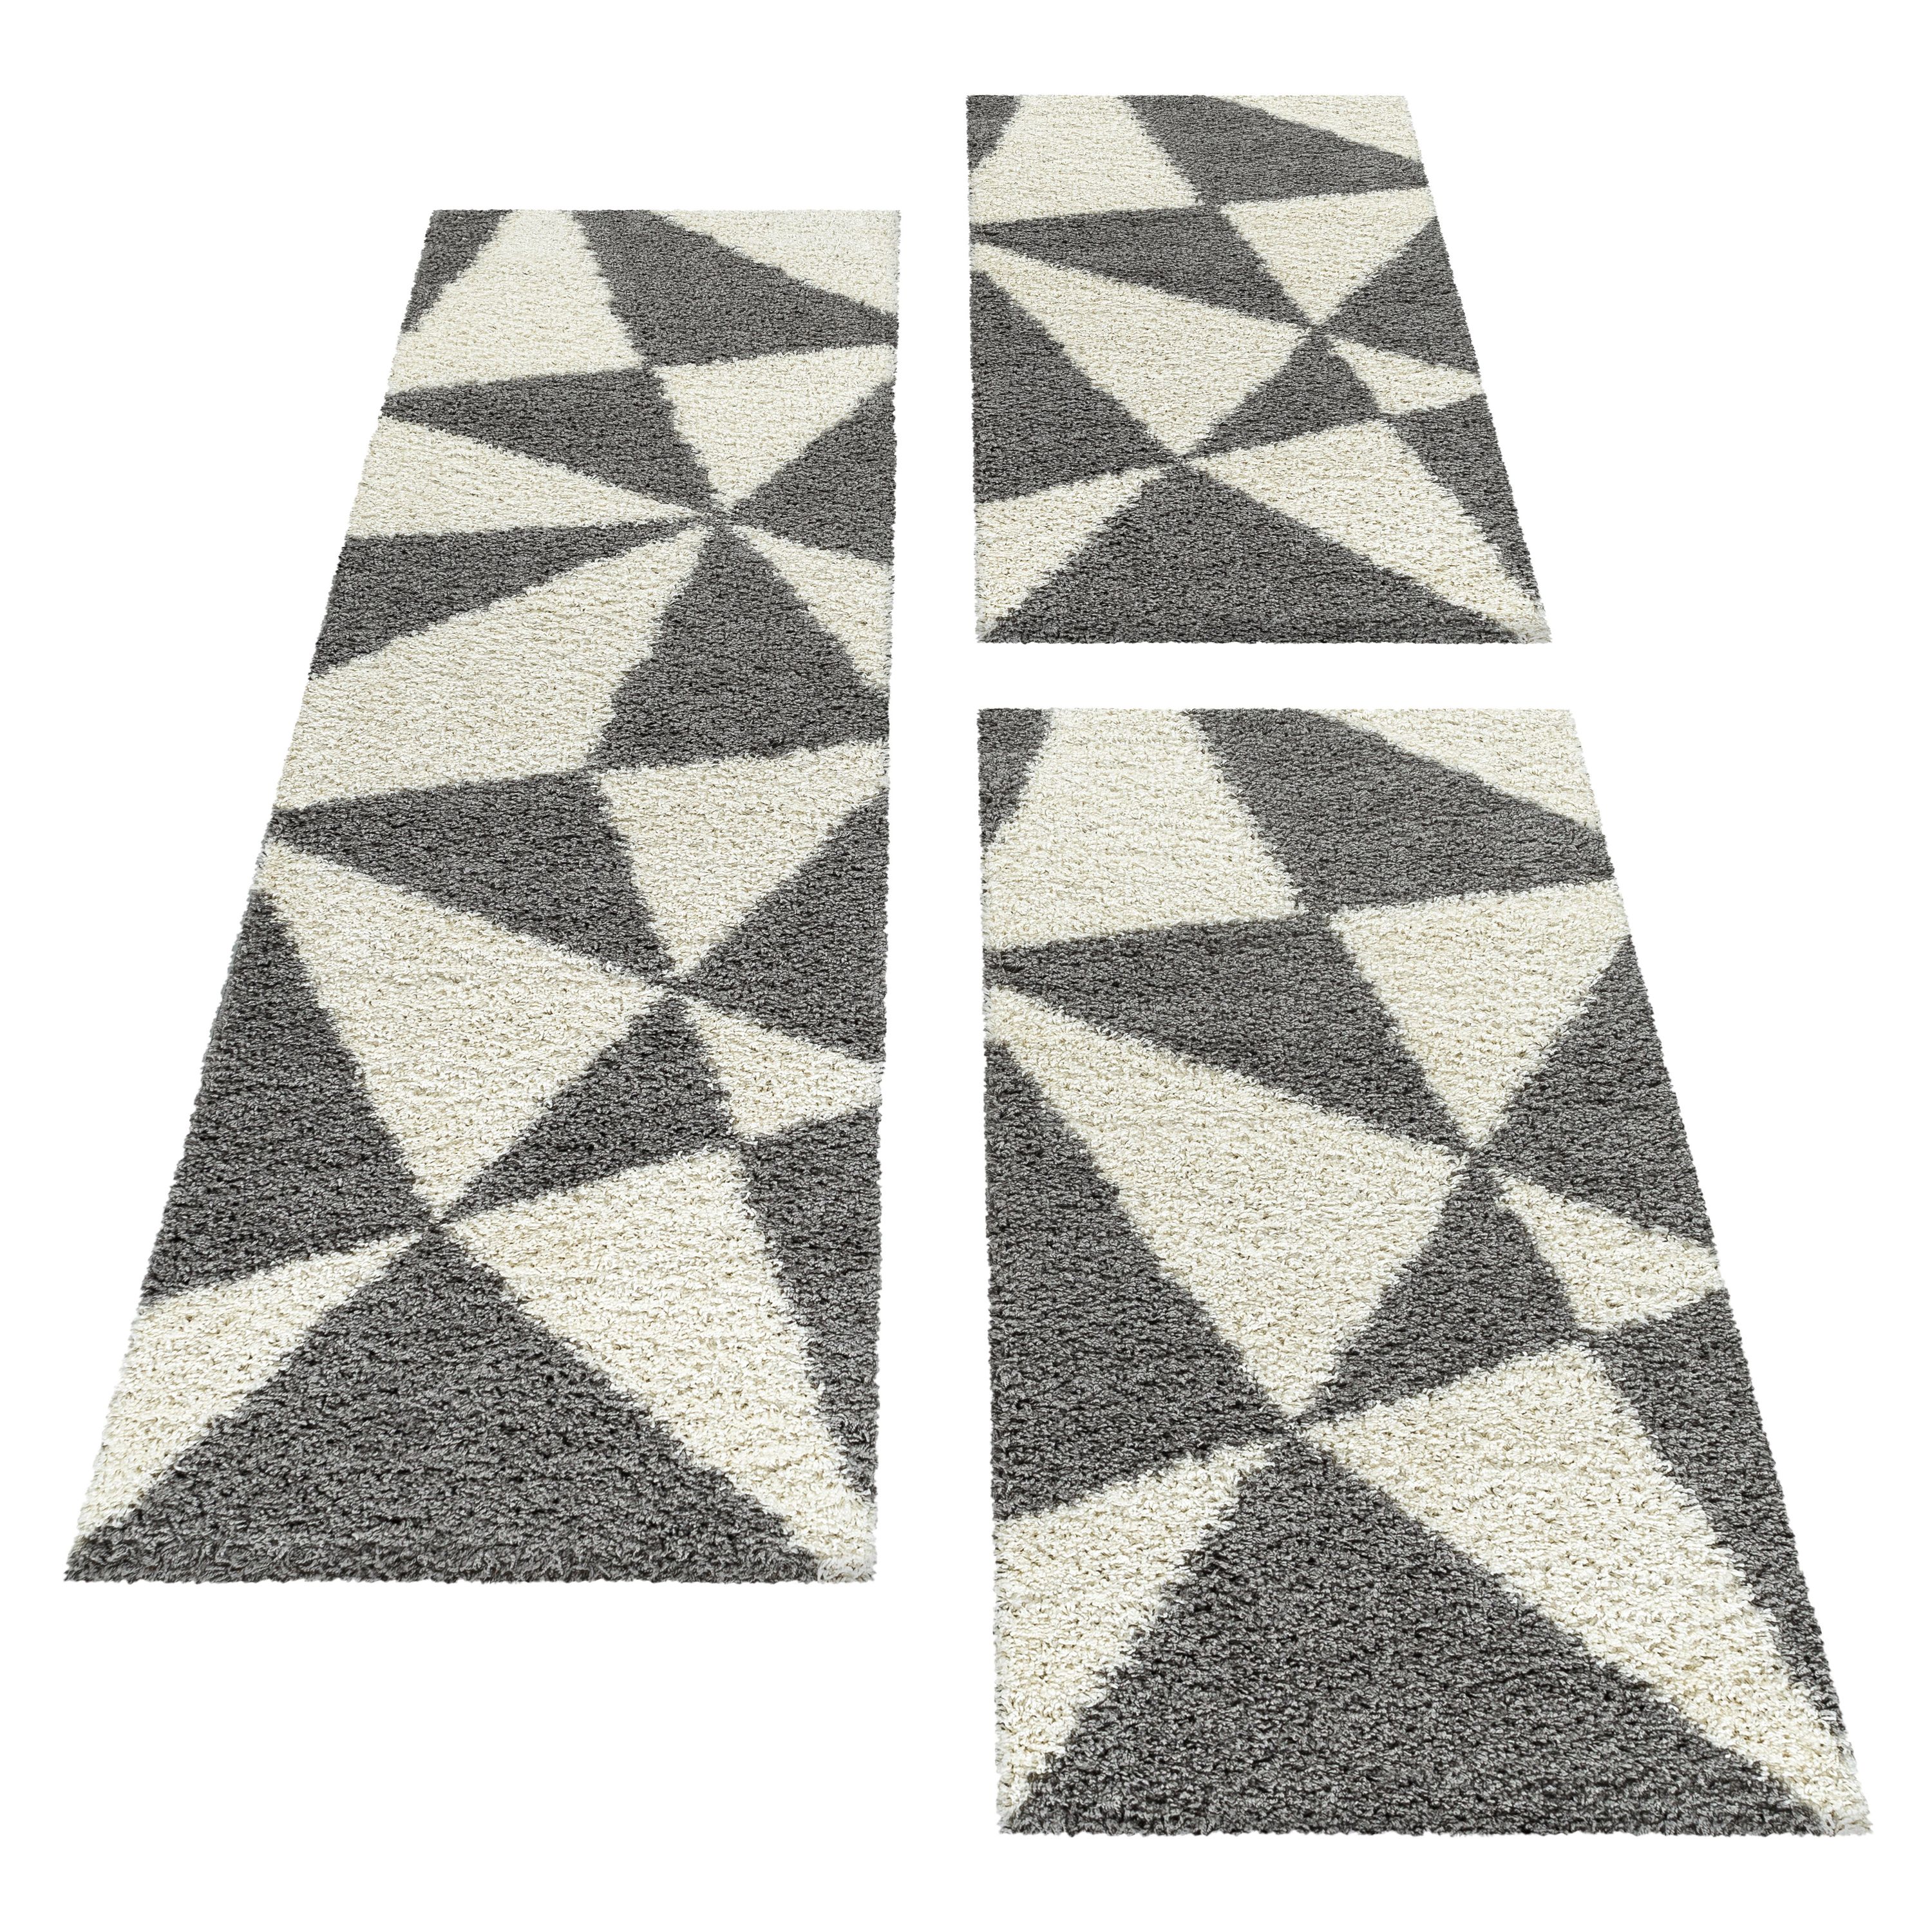 Design Teppich Set Shaggy Bettumrandung Läufer Muster Abstrakte Dreiecke 3 Teile